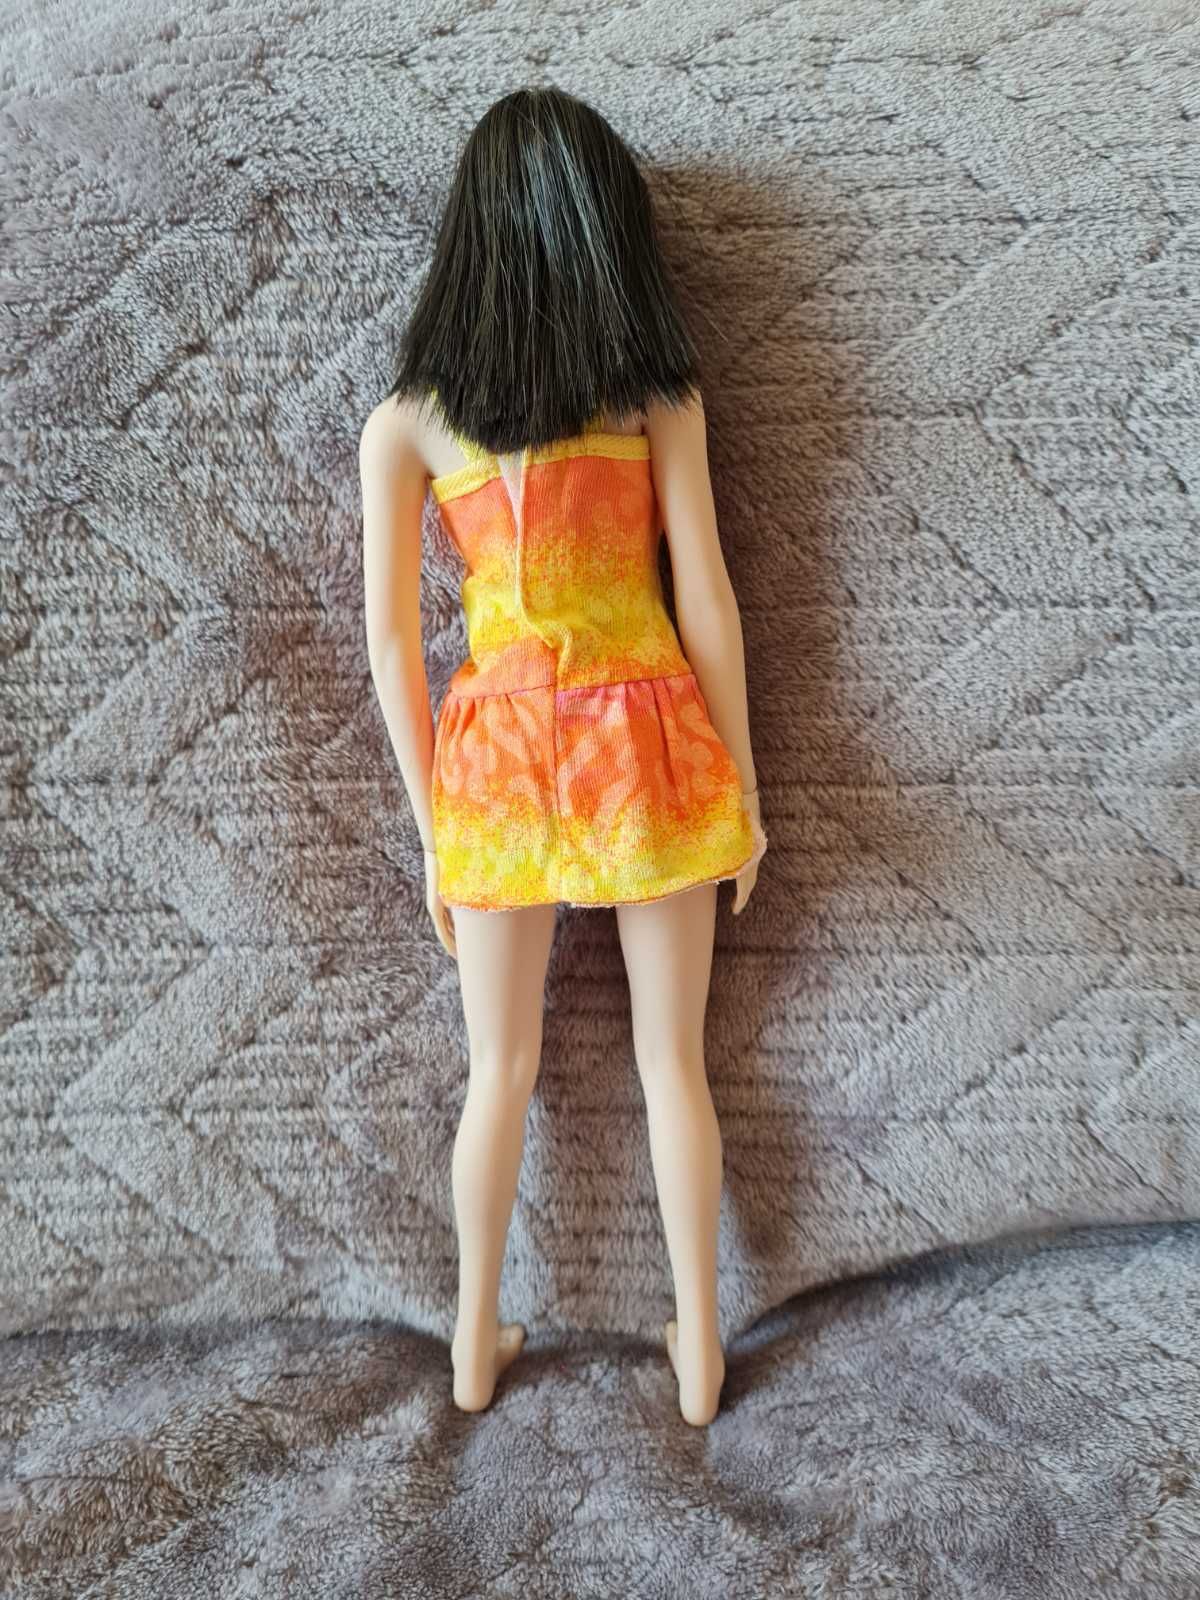 Продам шарнирную куклу, коллекционную, как Барби (Barbie)